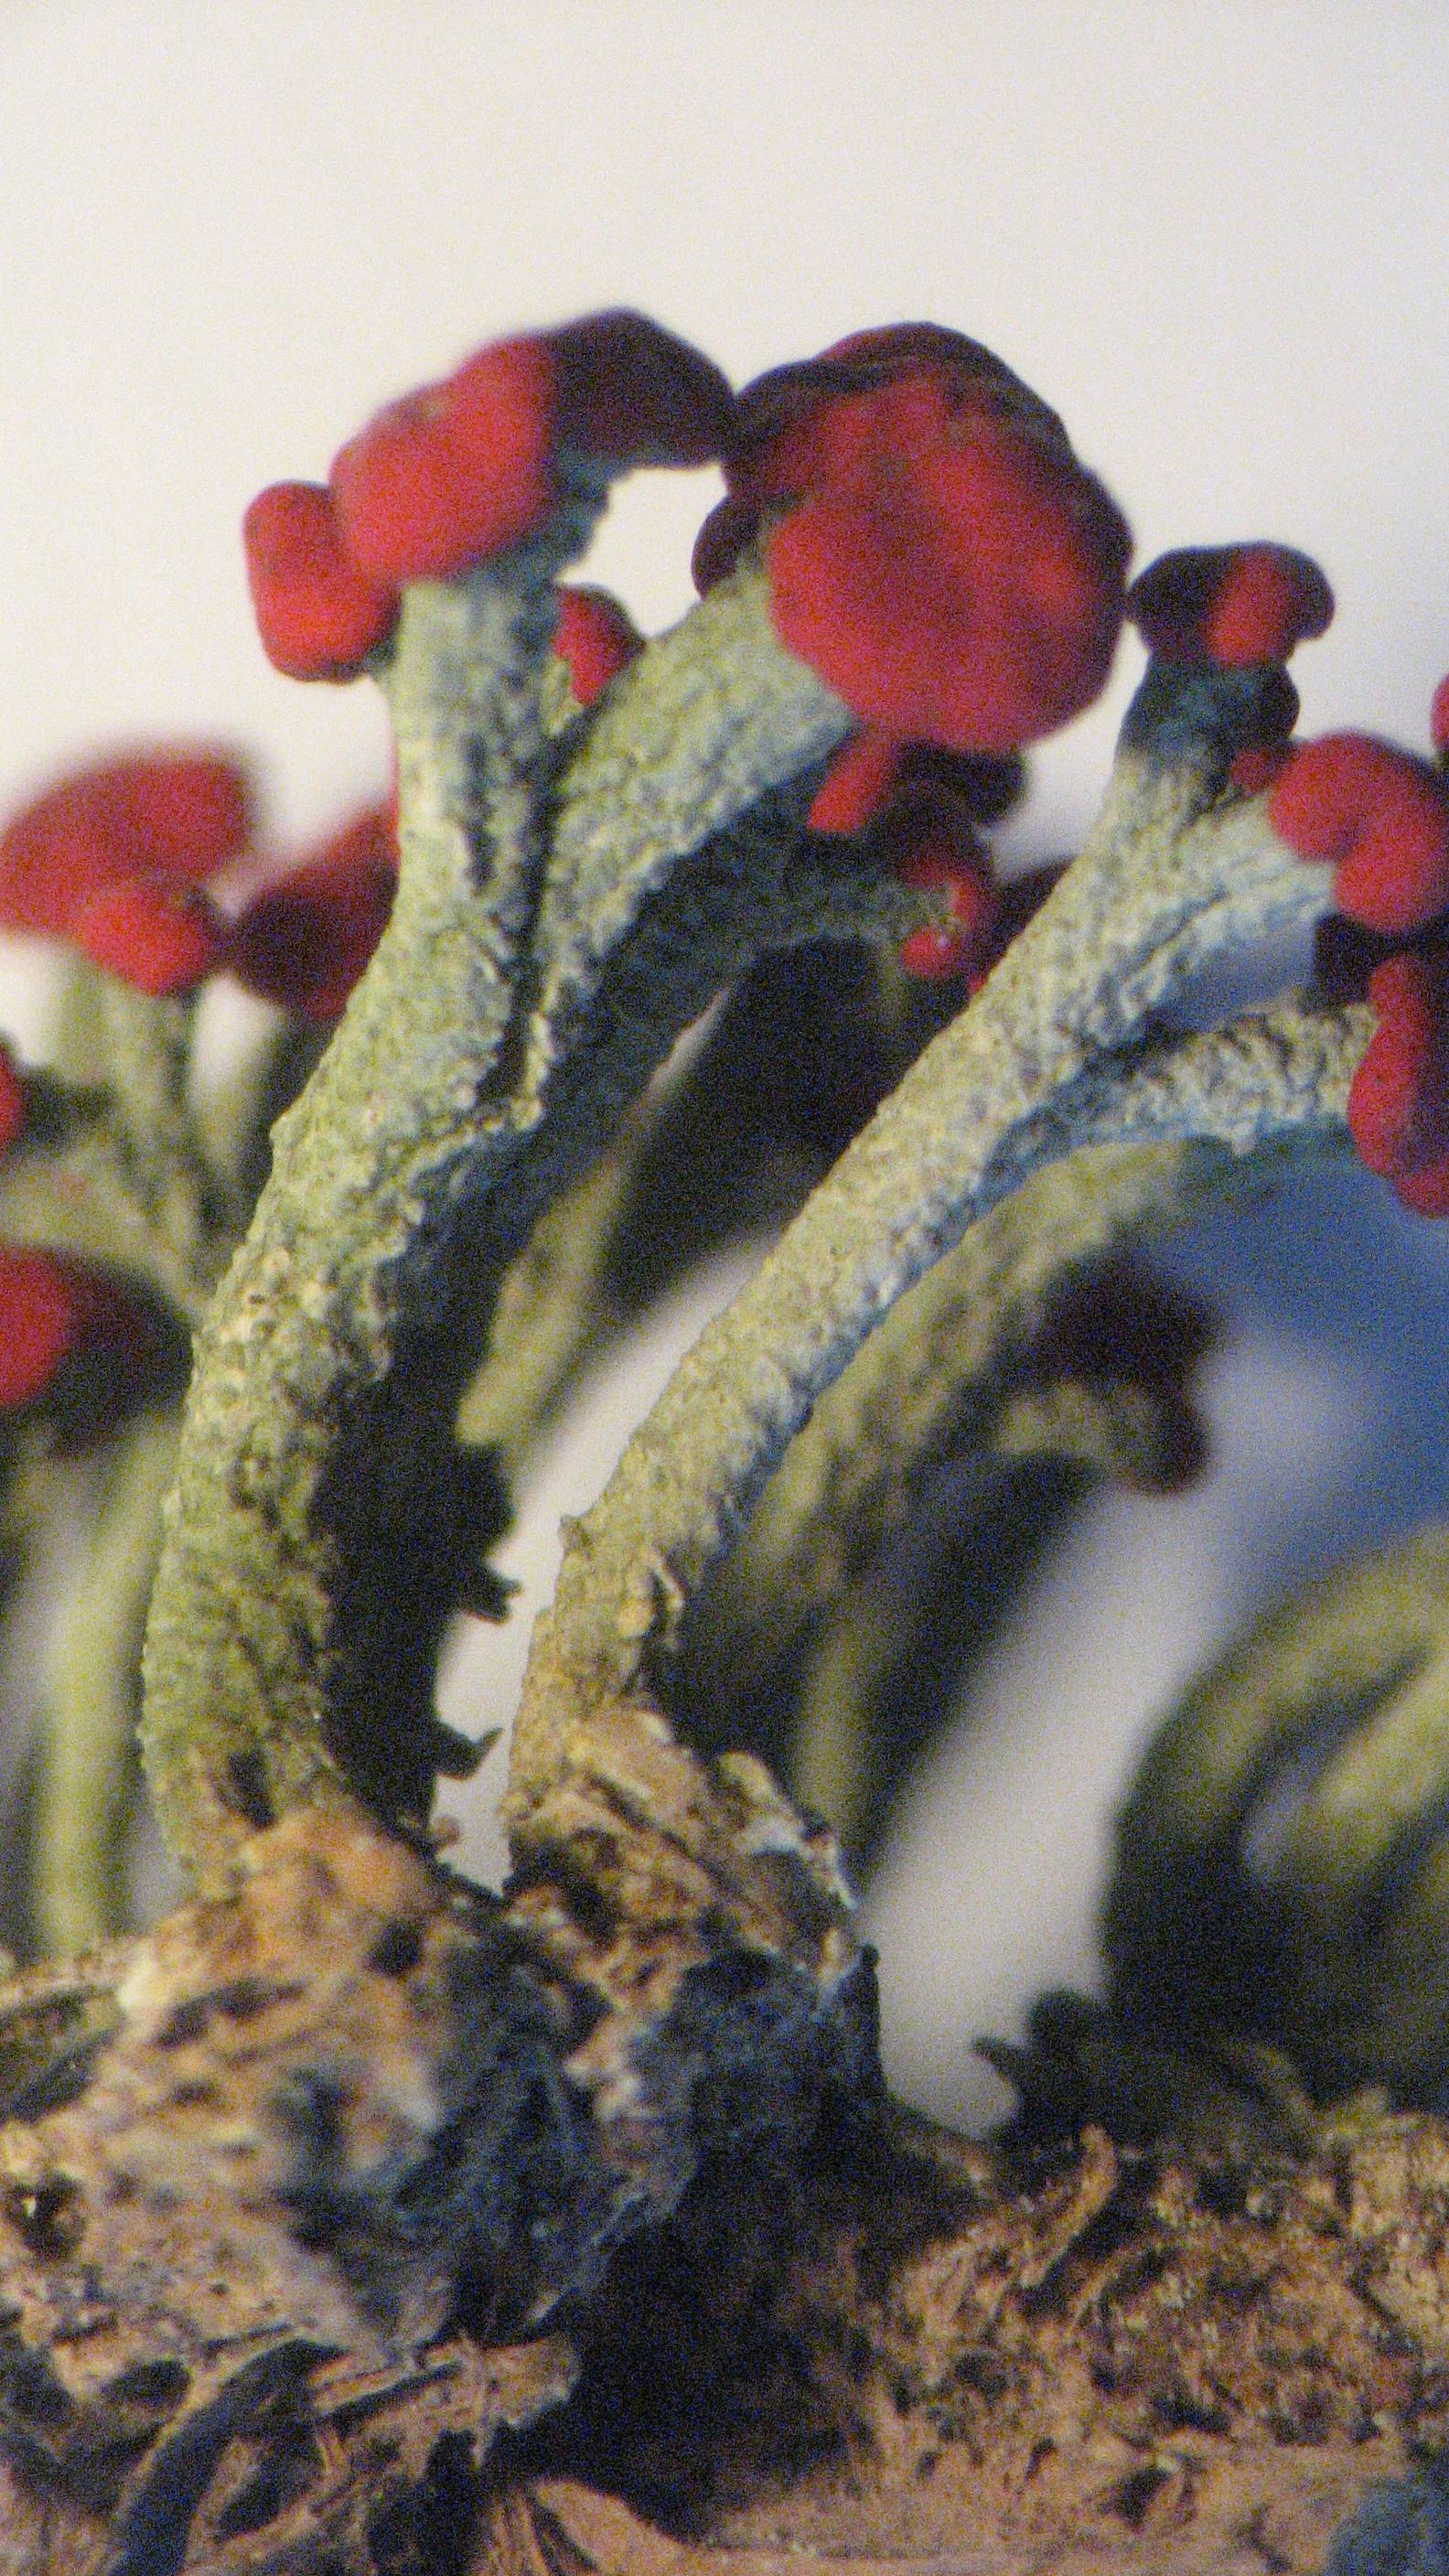 Cladoniaceae image